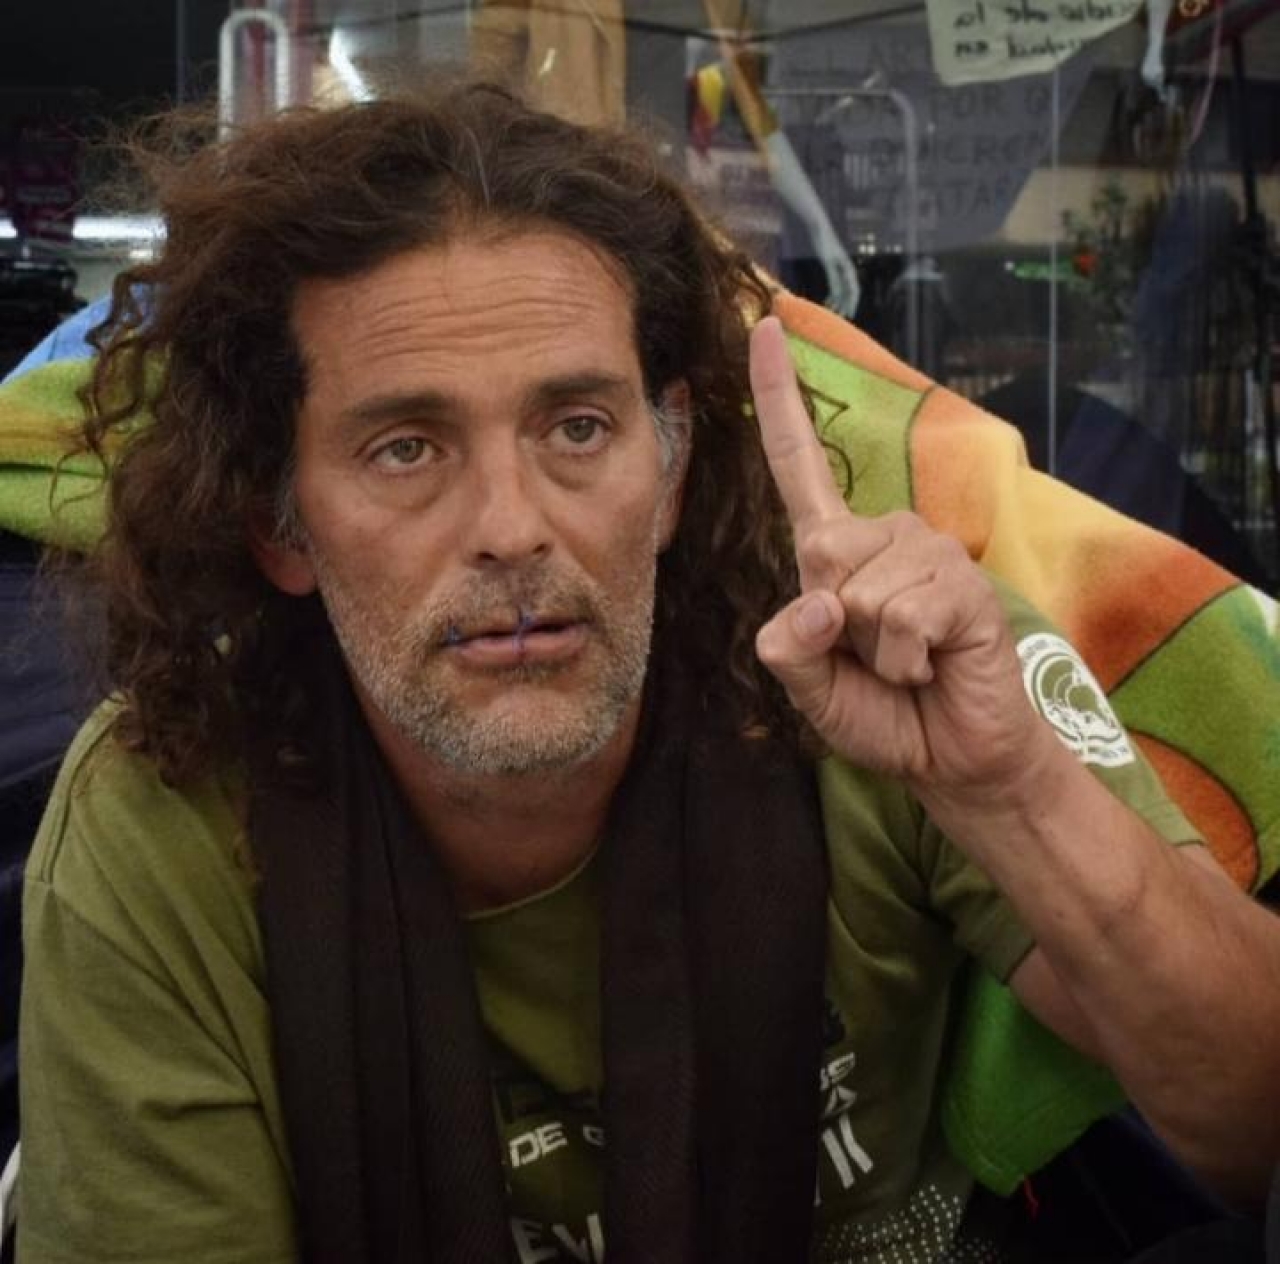 “¡Hoy muere un artista y se levanta un pueblo!”, el artista John Fitzgeral en huelga de hambre